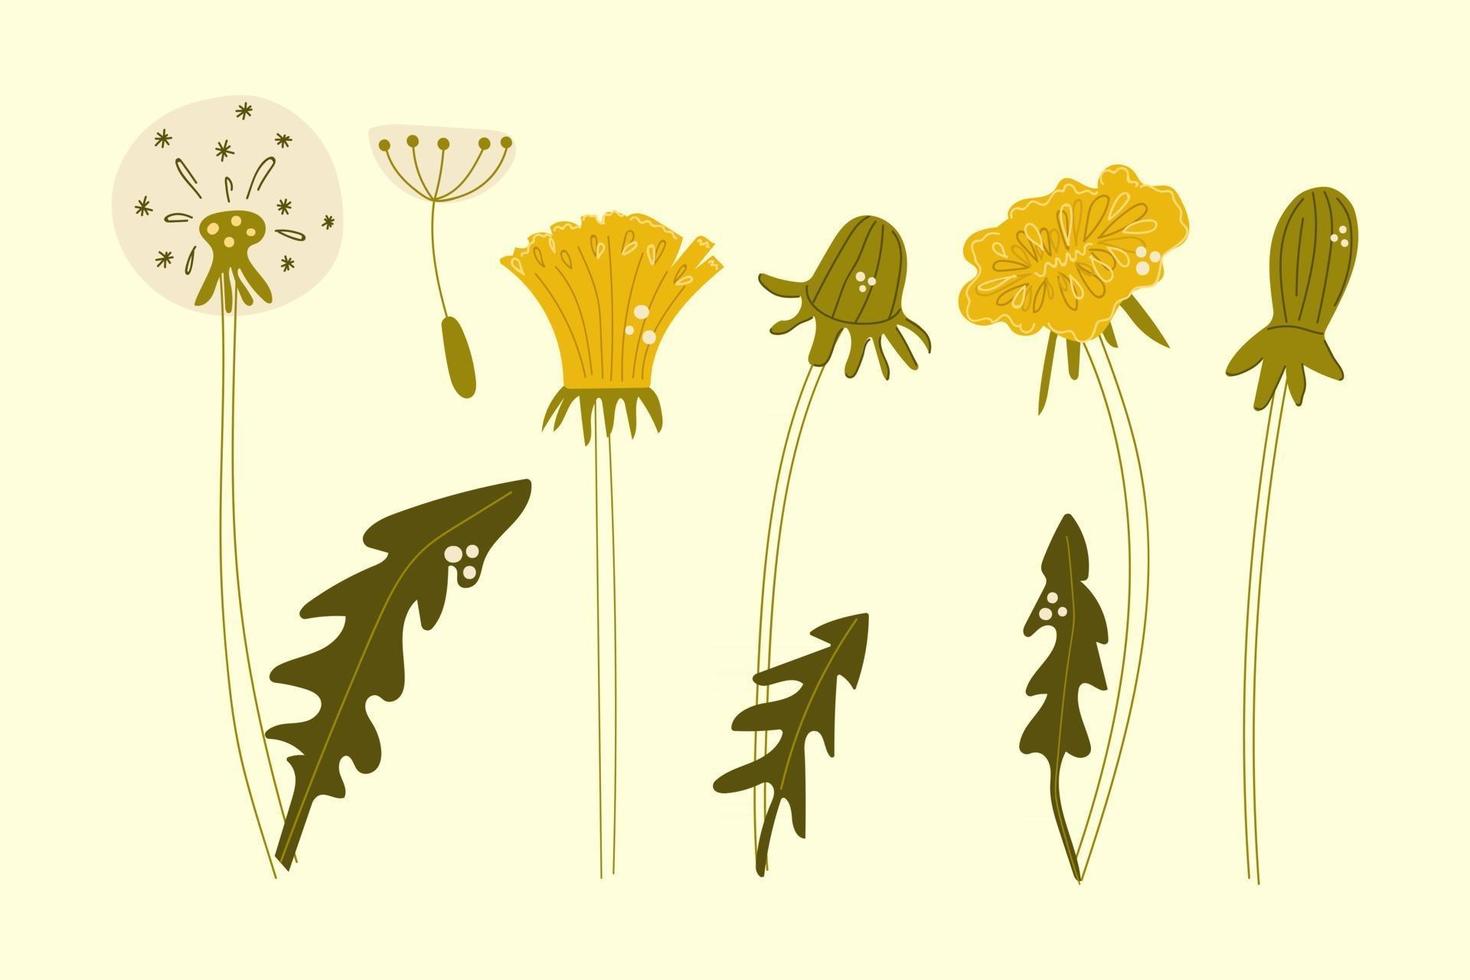 dibujado a mano conjunto de flores de diente de león. ilustración plana. vector